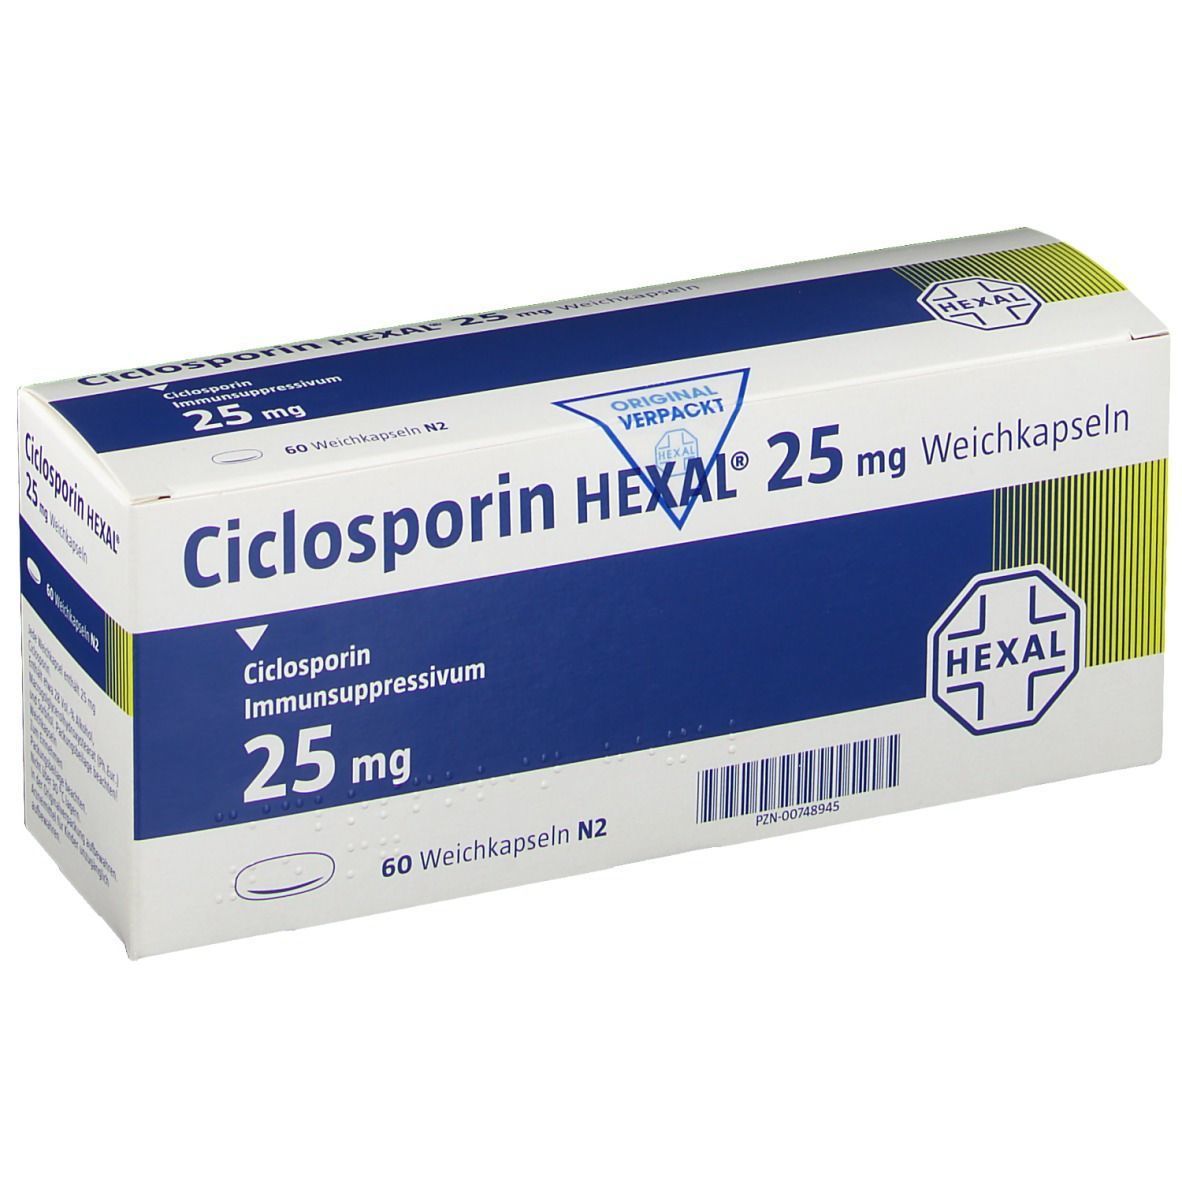 Ciclosporin HEXAL® 25 mg